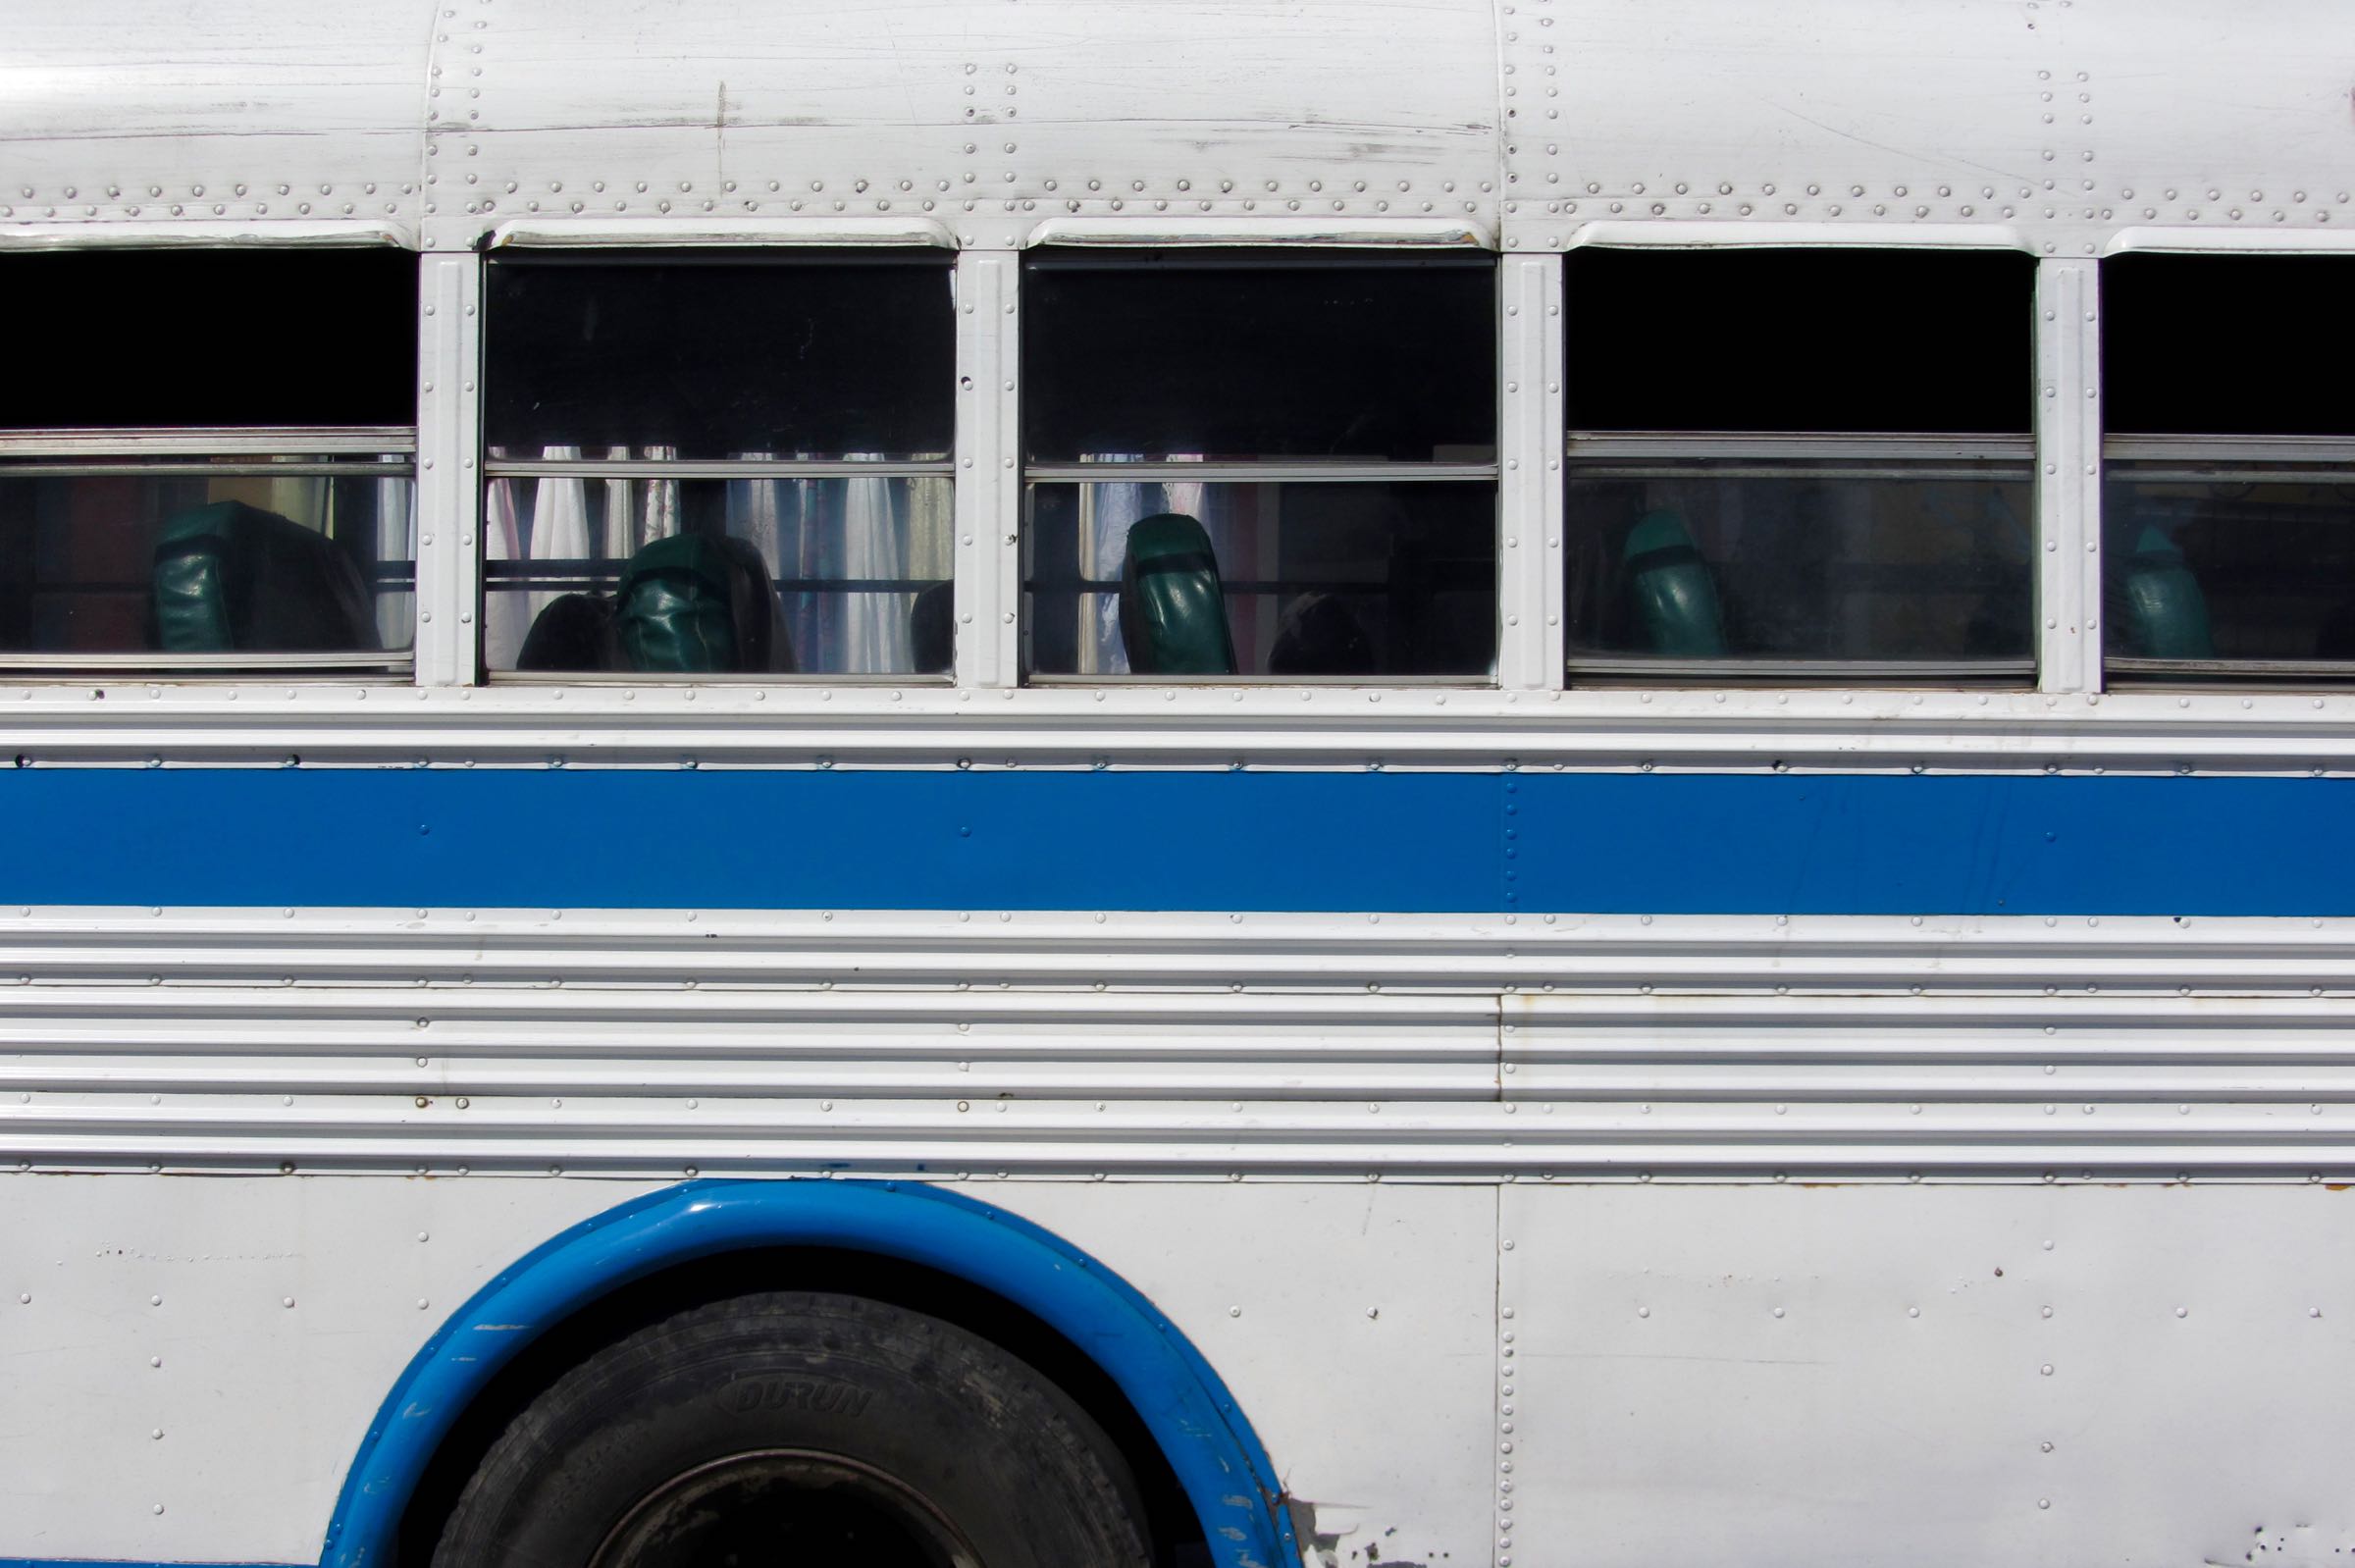 Bus in La Ceiba, Atlántida, Honduras